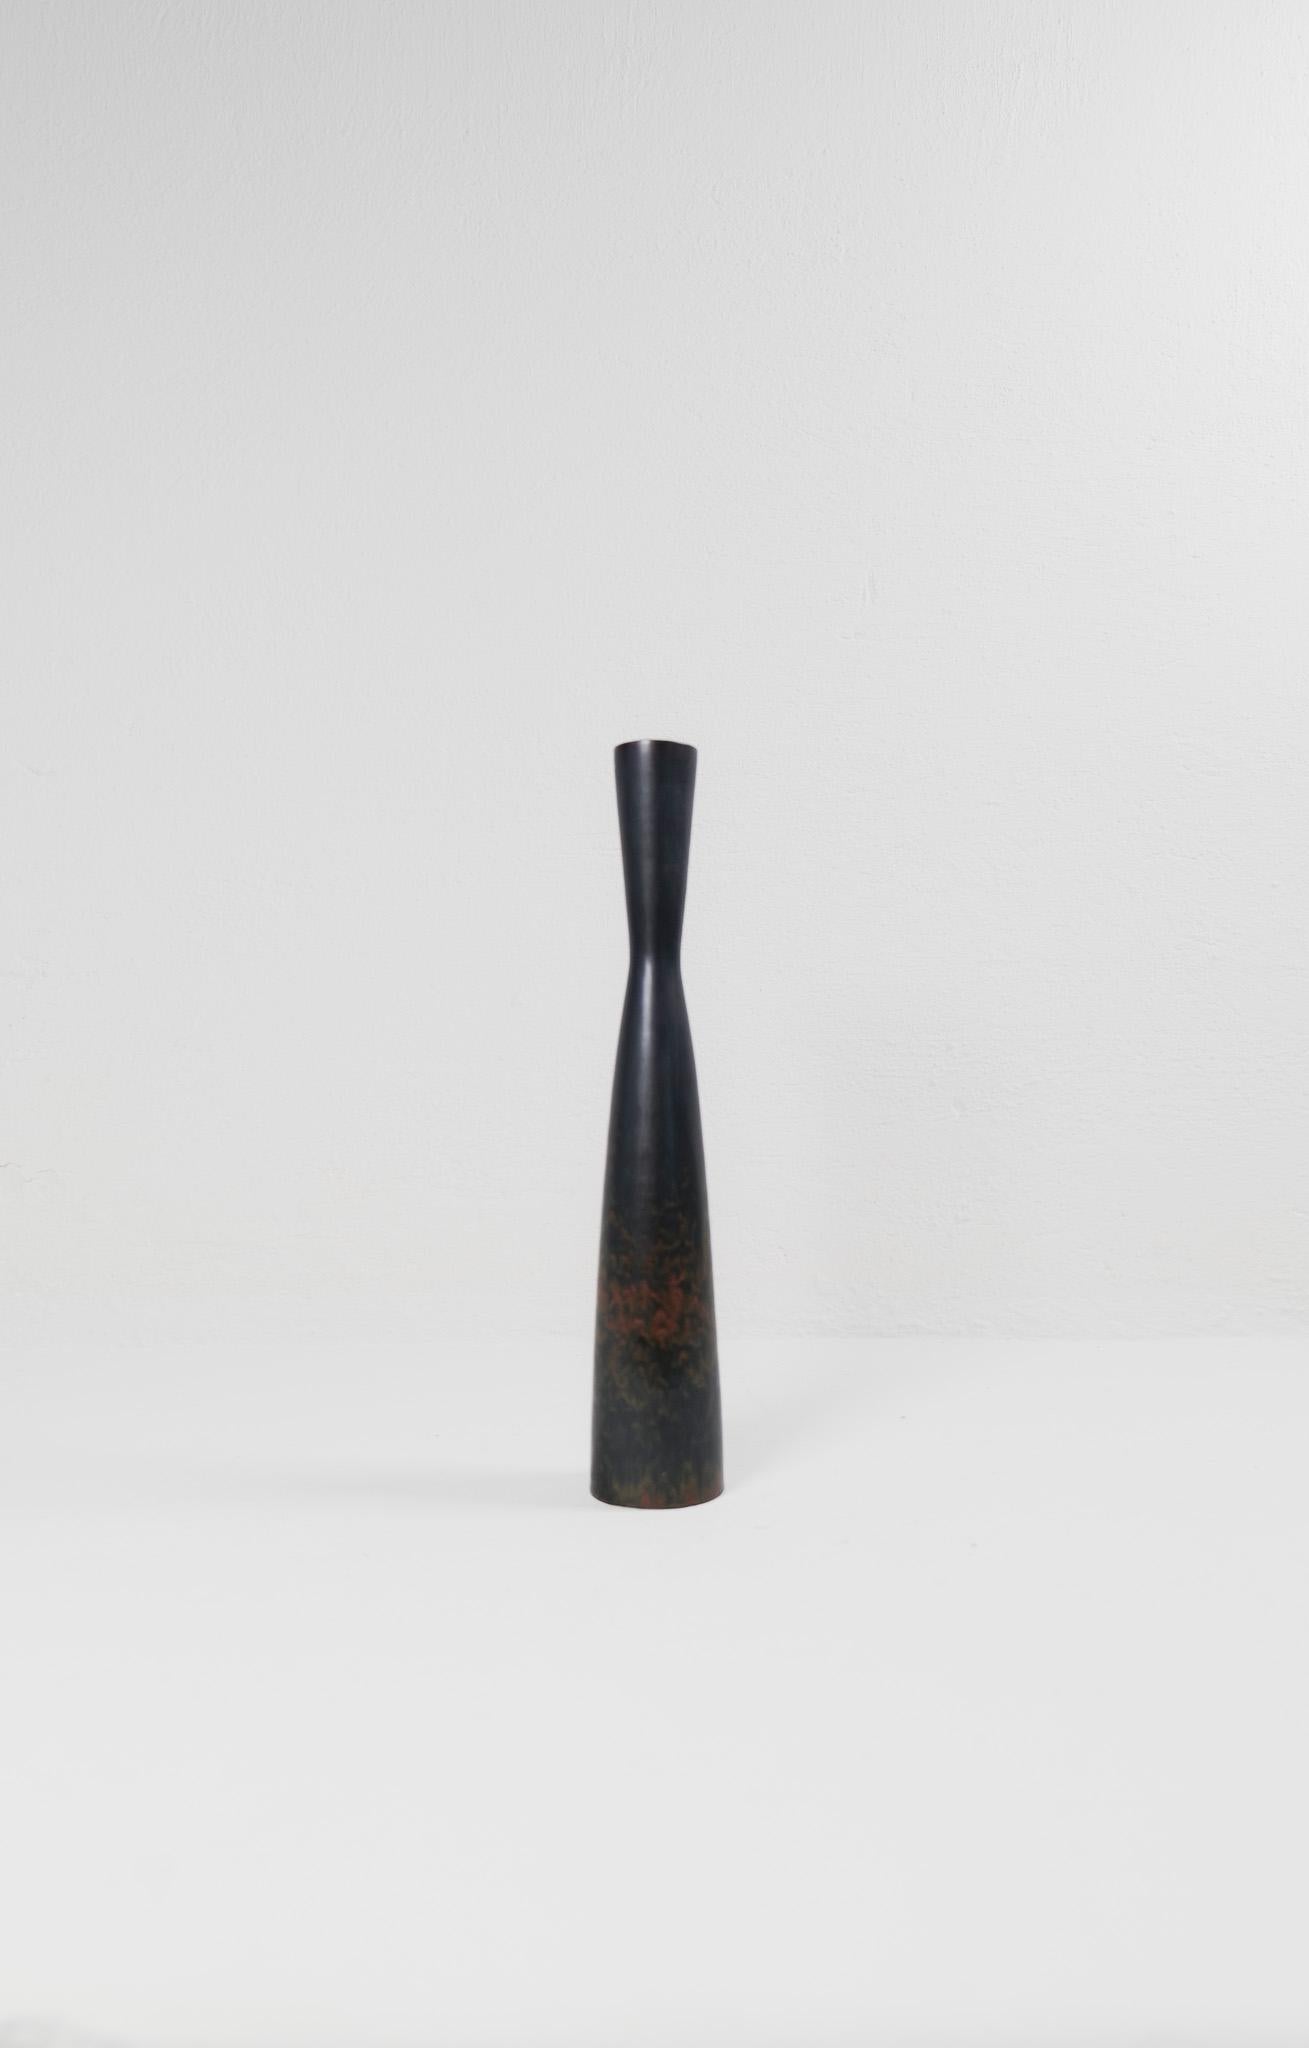 Ce vase exceptionnel de Rörstrand et du fabricant ou designer Carl Harry Stålhane a été fabriqué en Suède au milieu du siècle dernier. Sa belle glaçure combinée à ses incroyables formes en sablier en font une pièce d'exception. La glaçure et les